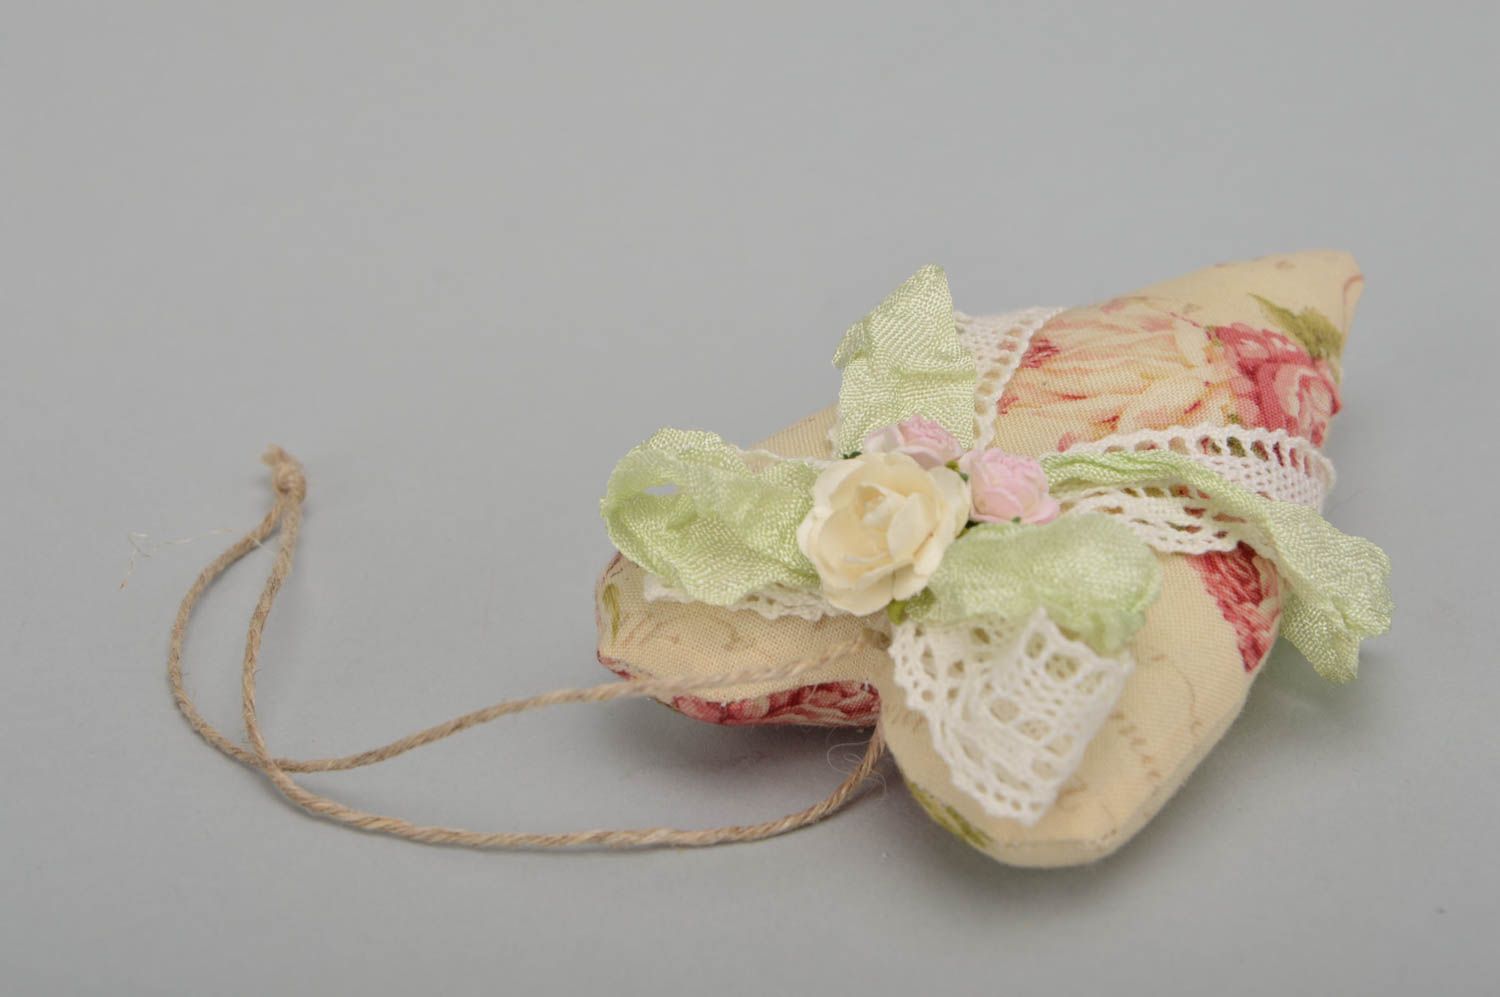 Интерьерная подвеска сердце с цветами с запахом ванили тектсильное ручной работы фото 3